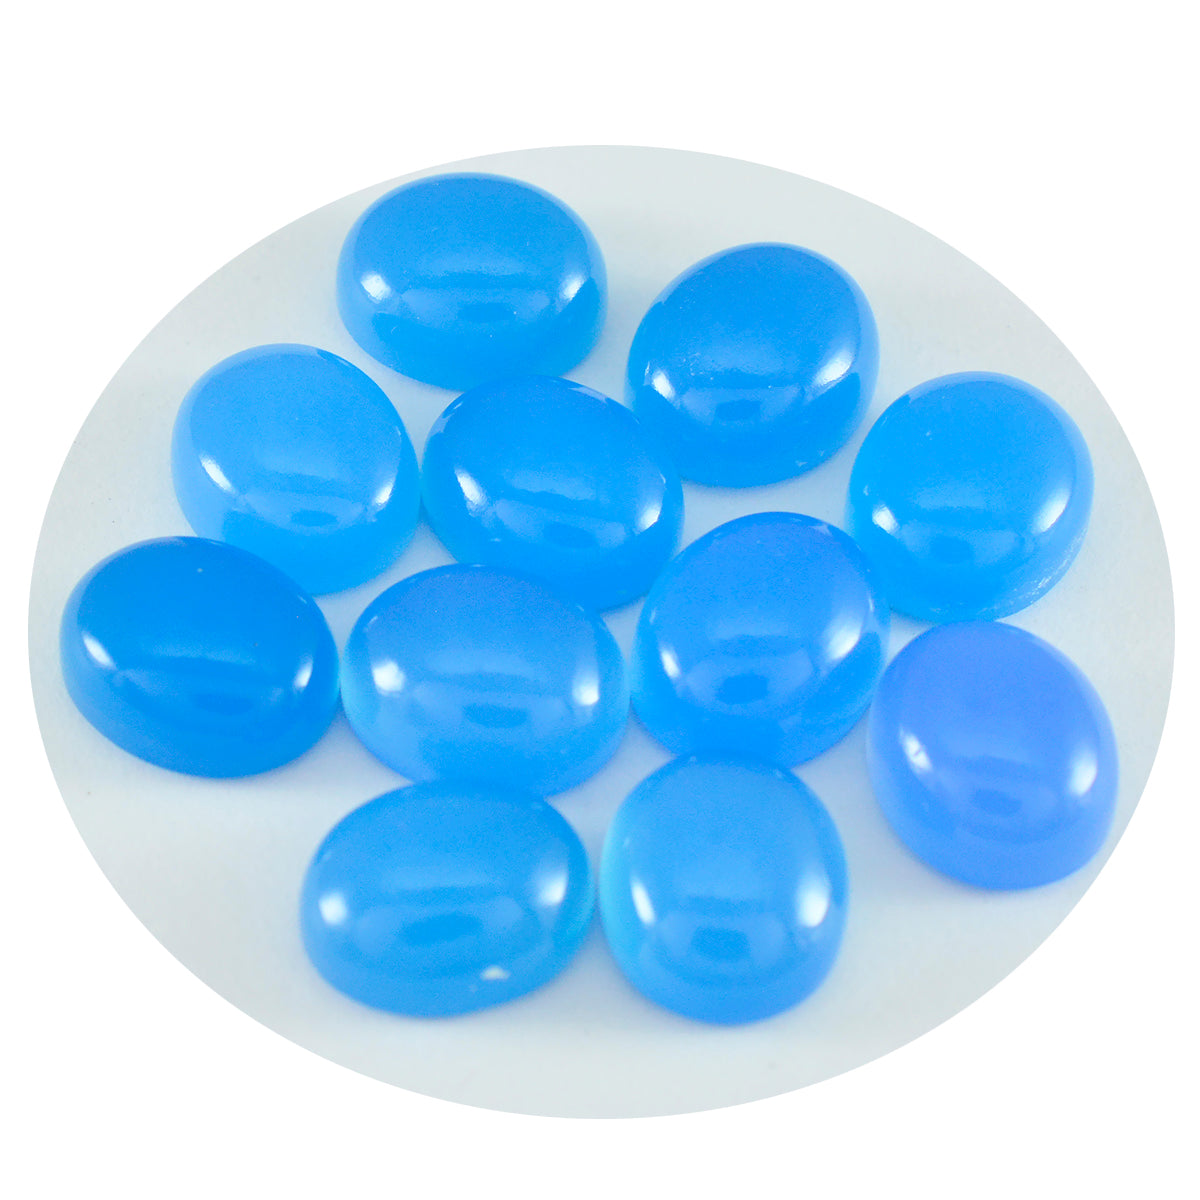 Riyogems 1 cabochon de calcédoine bleue de 5 x 7 mm de forme ovale, pierre précieuse de qualité surprenante